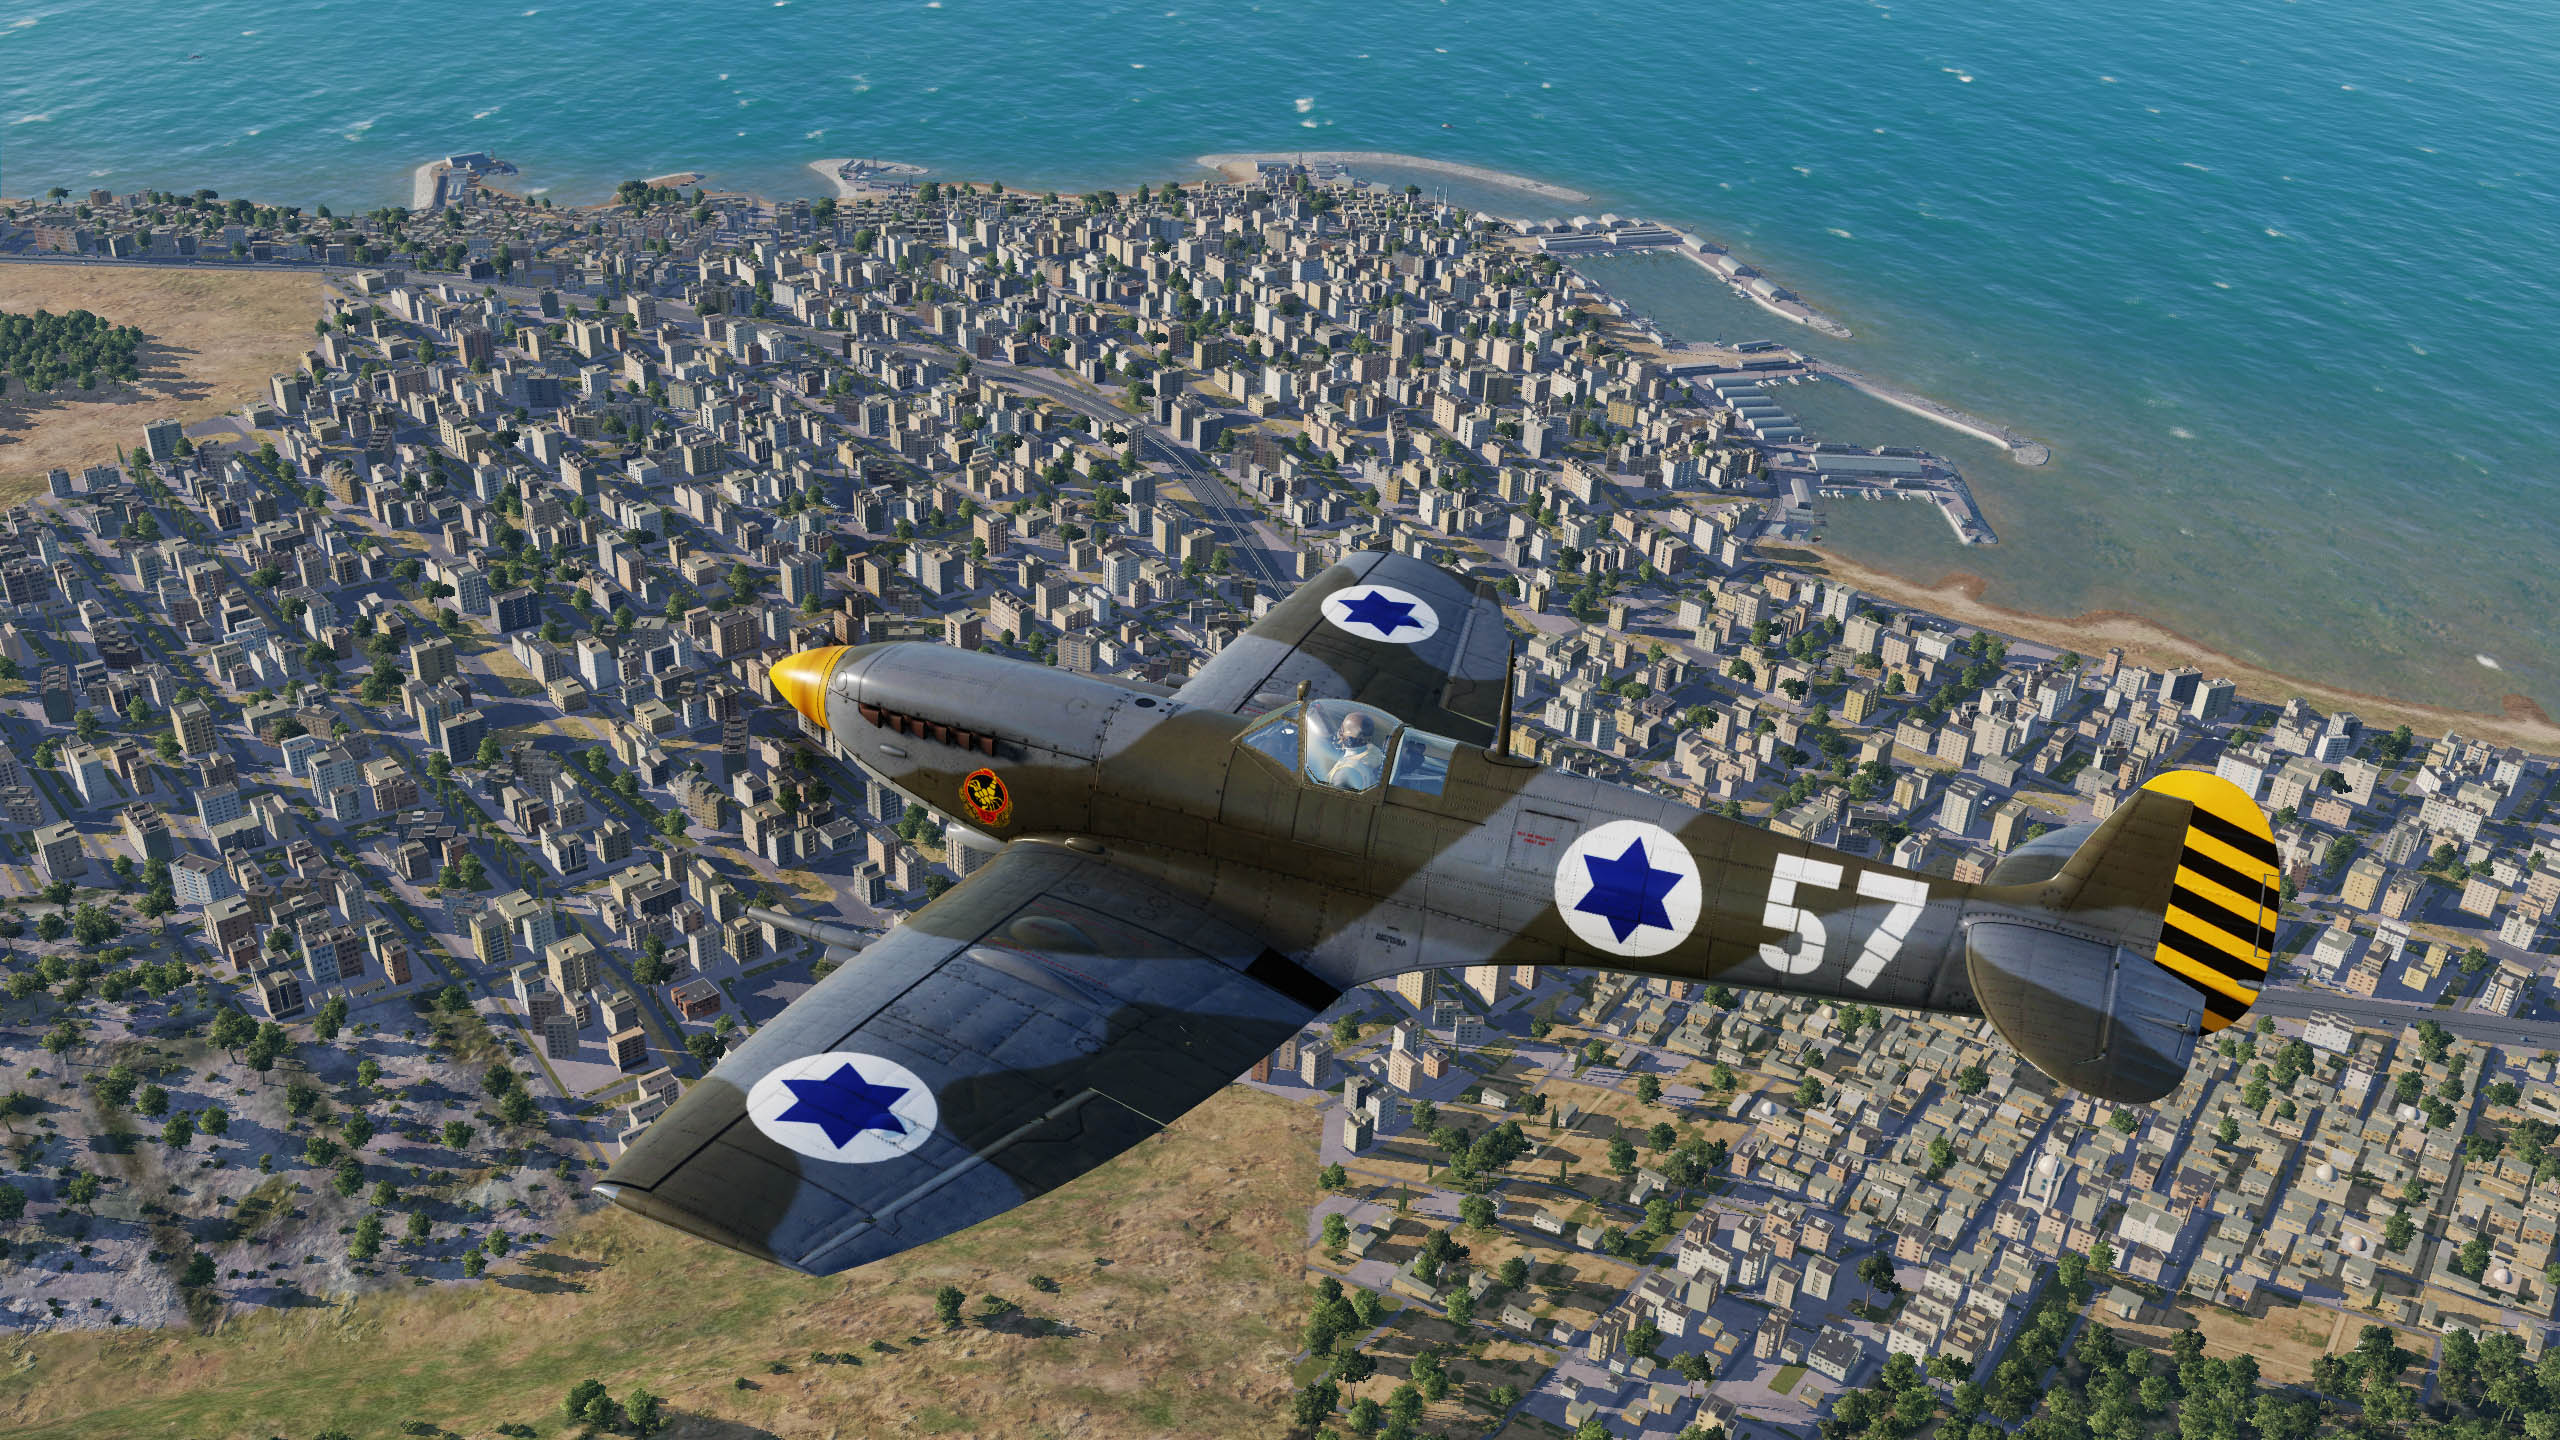 IAF_SpitfireLFMkIXCW_105_Tajeset-57